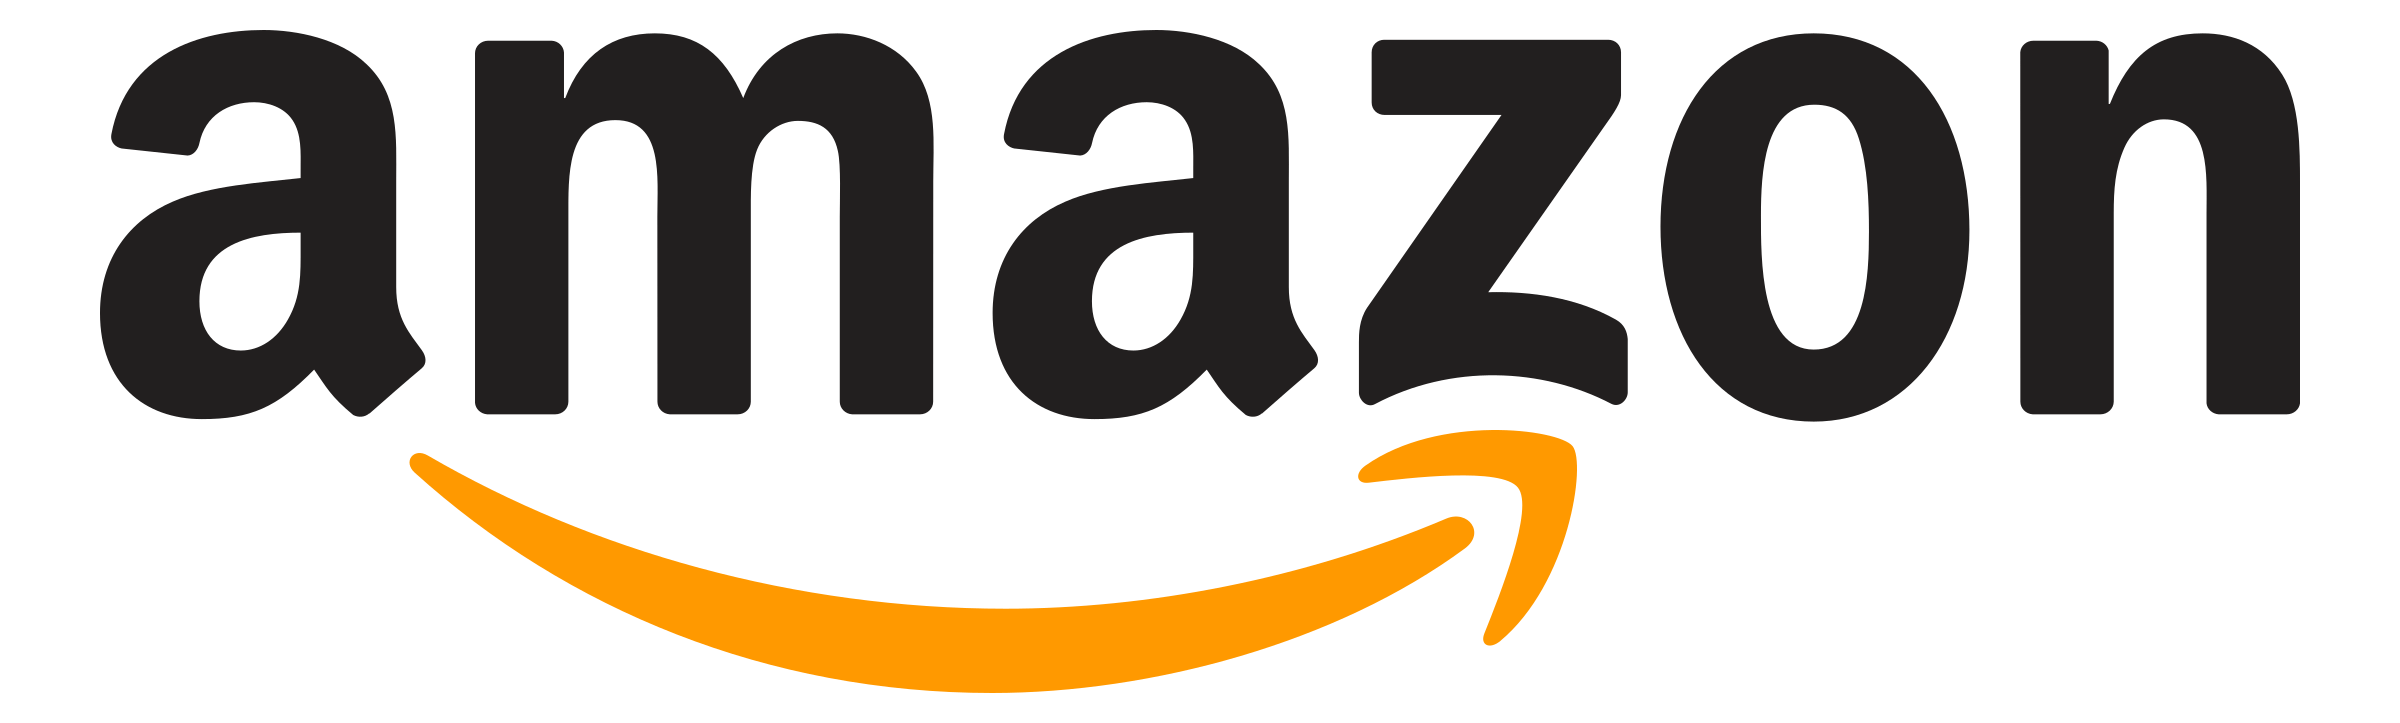 Guaripete Amazon Store